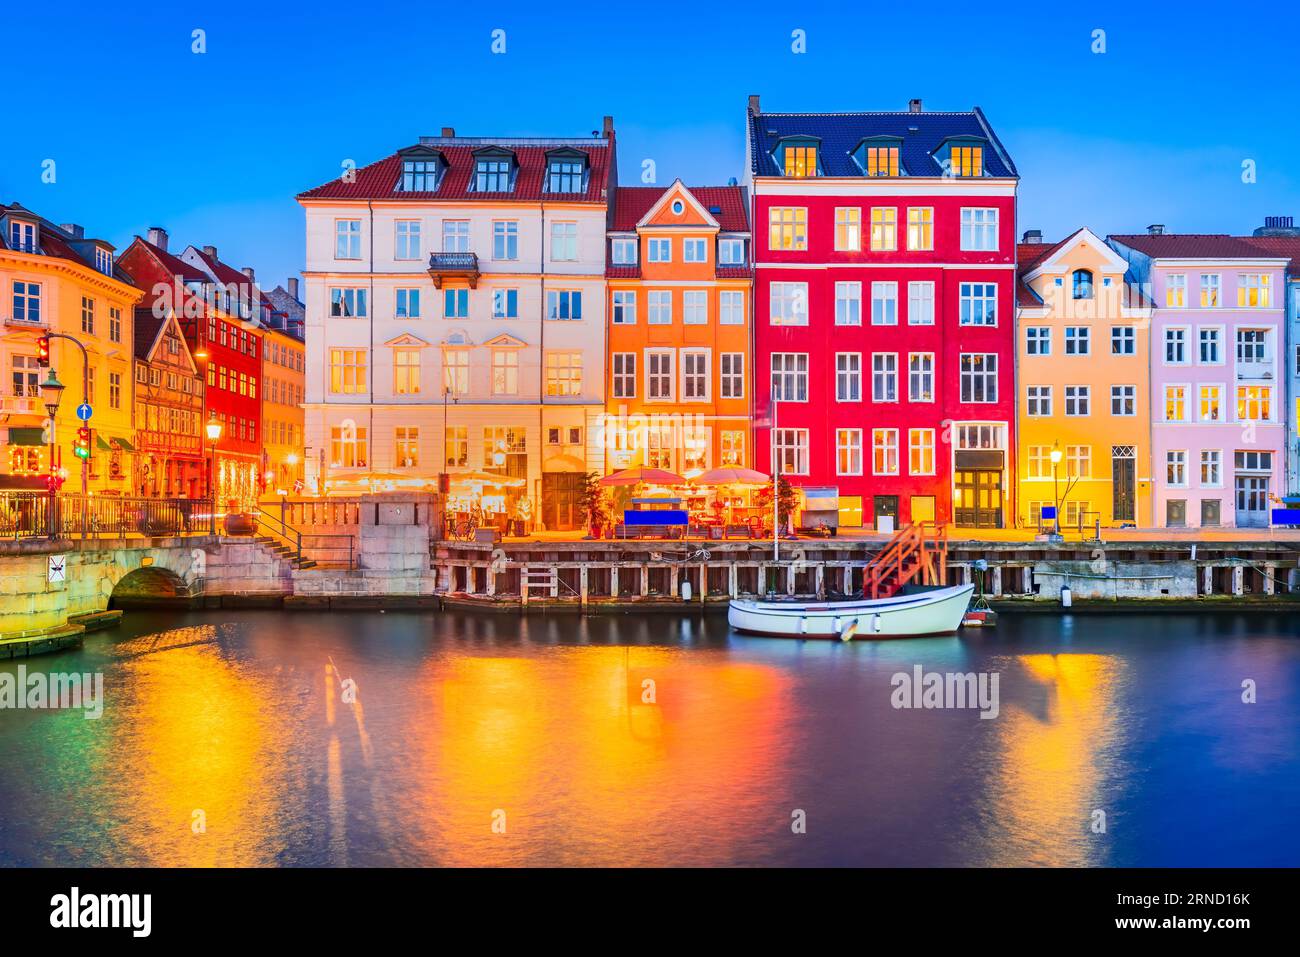 Le charme de Copenhague, Danemark à Nyhavn. Canal emblématique, image nocturne colorée et reflets d'eau à couper le souffle. Banque D'Images